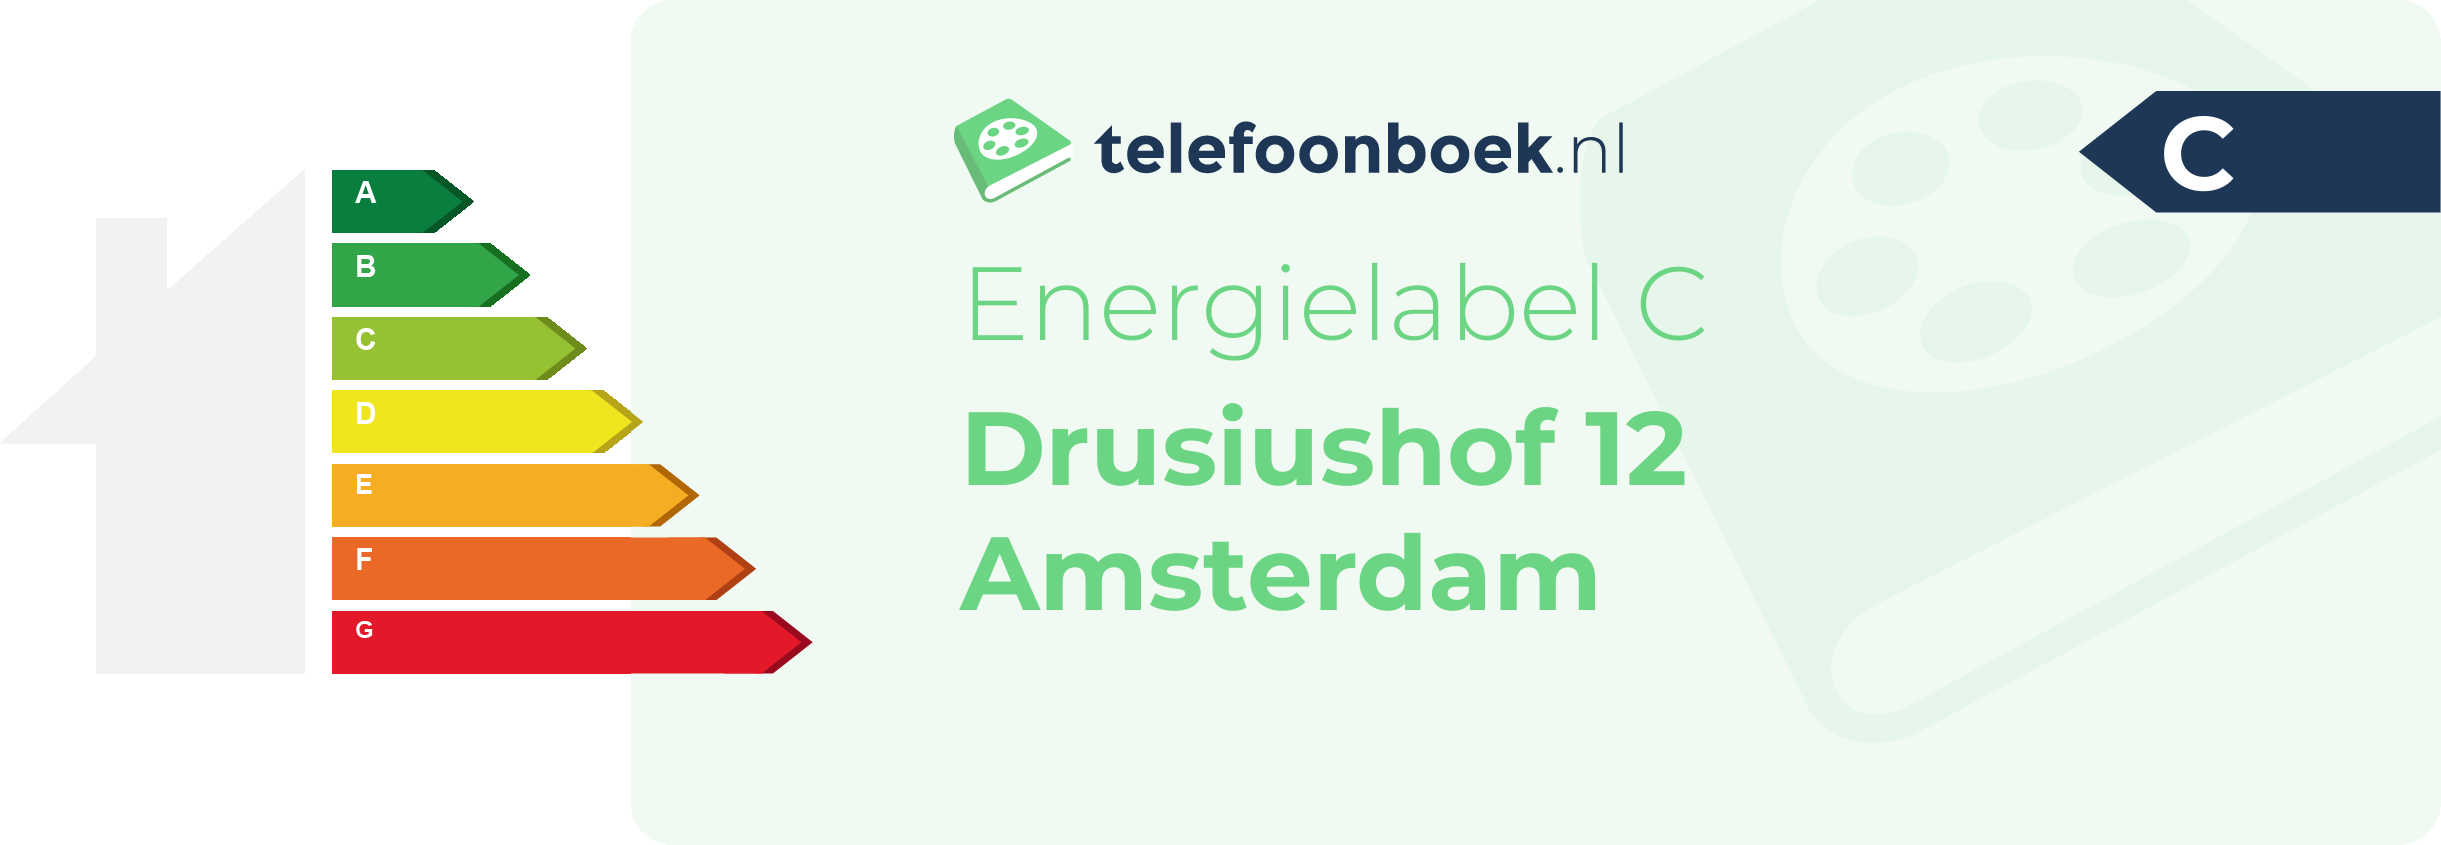 Energielabel Drusiushof 12 Amsterdam